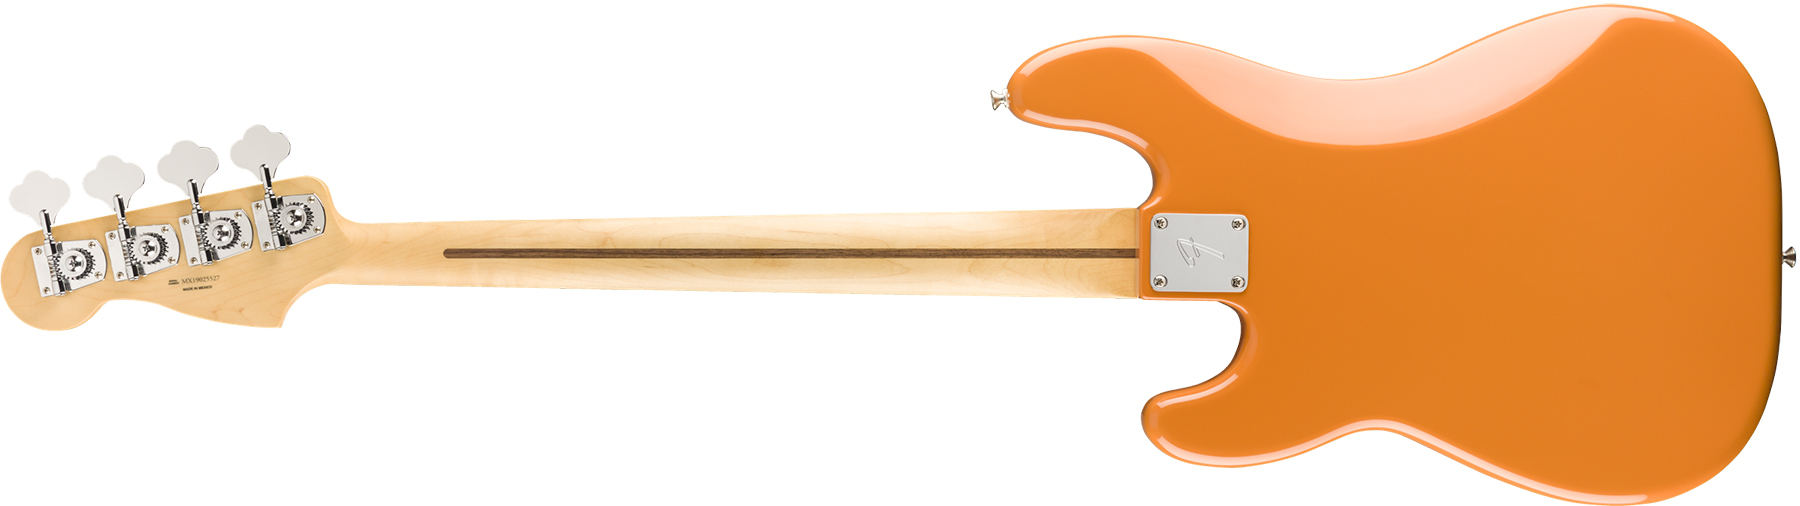 Fender Precision Bass Player Mex Pf - Capri Orange - Solidbody E-bass - Variation 1